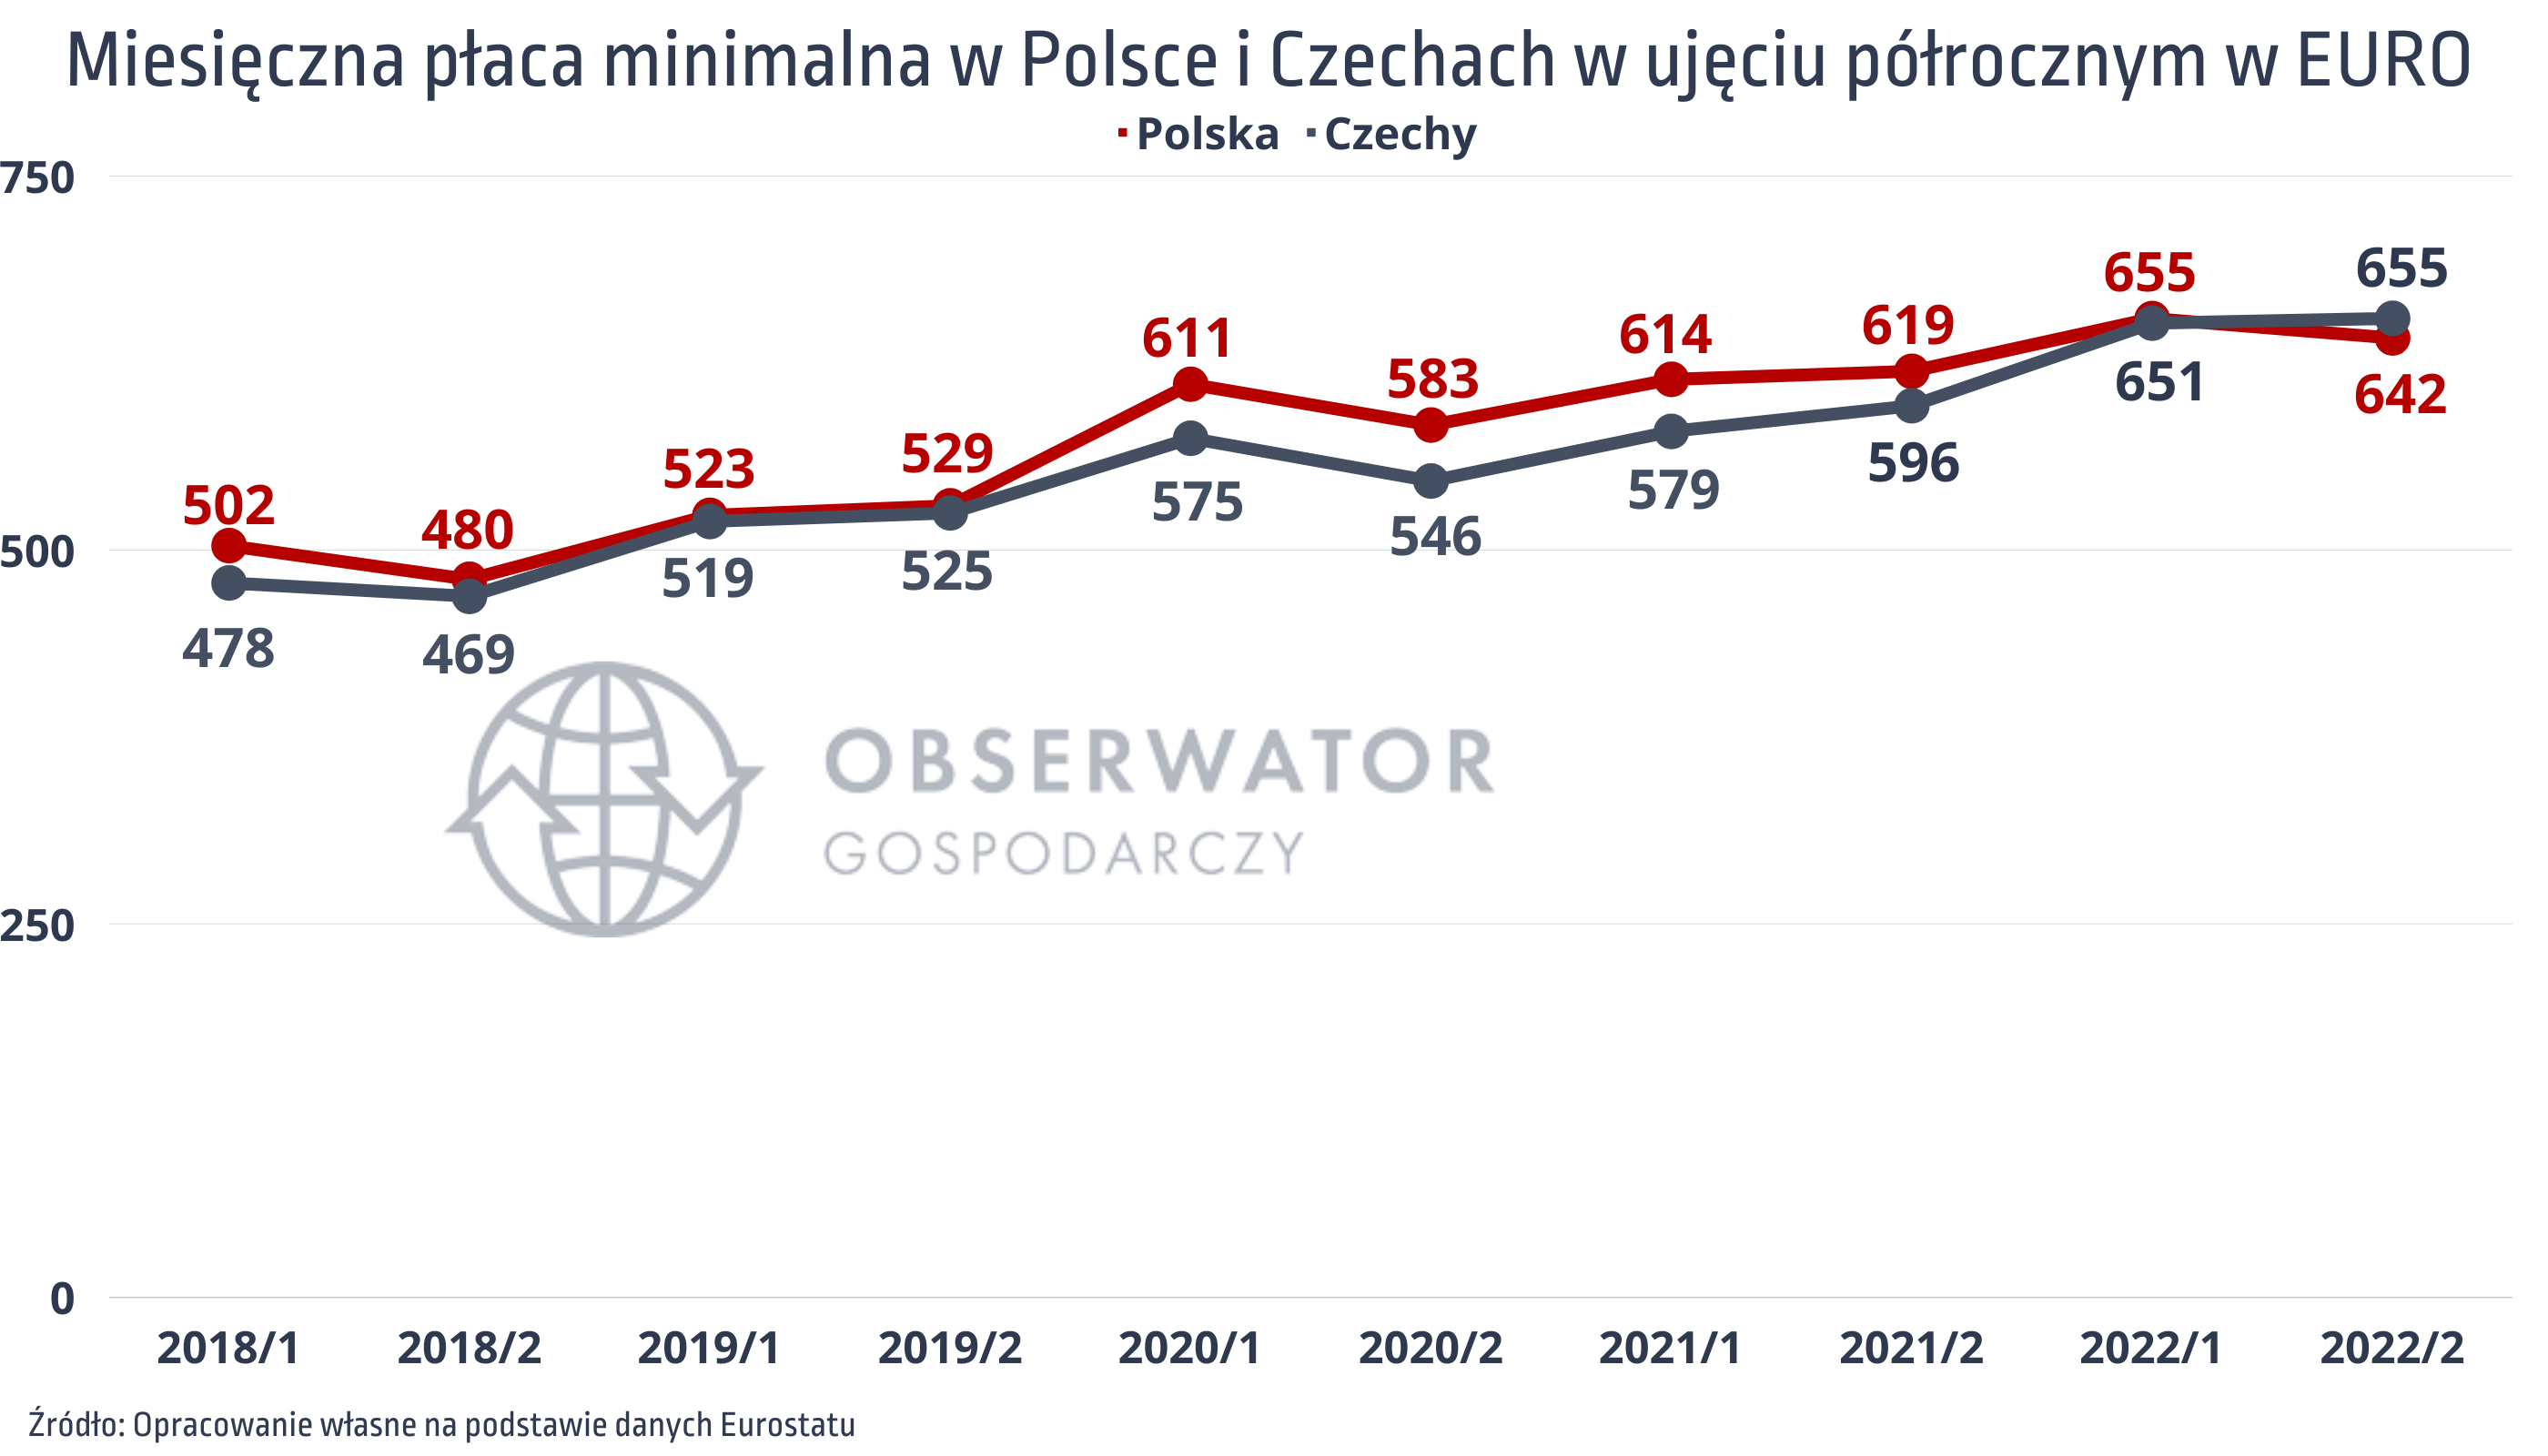 Płaca minimalna w Polsce i Czechach w EURO